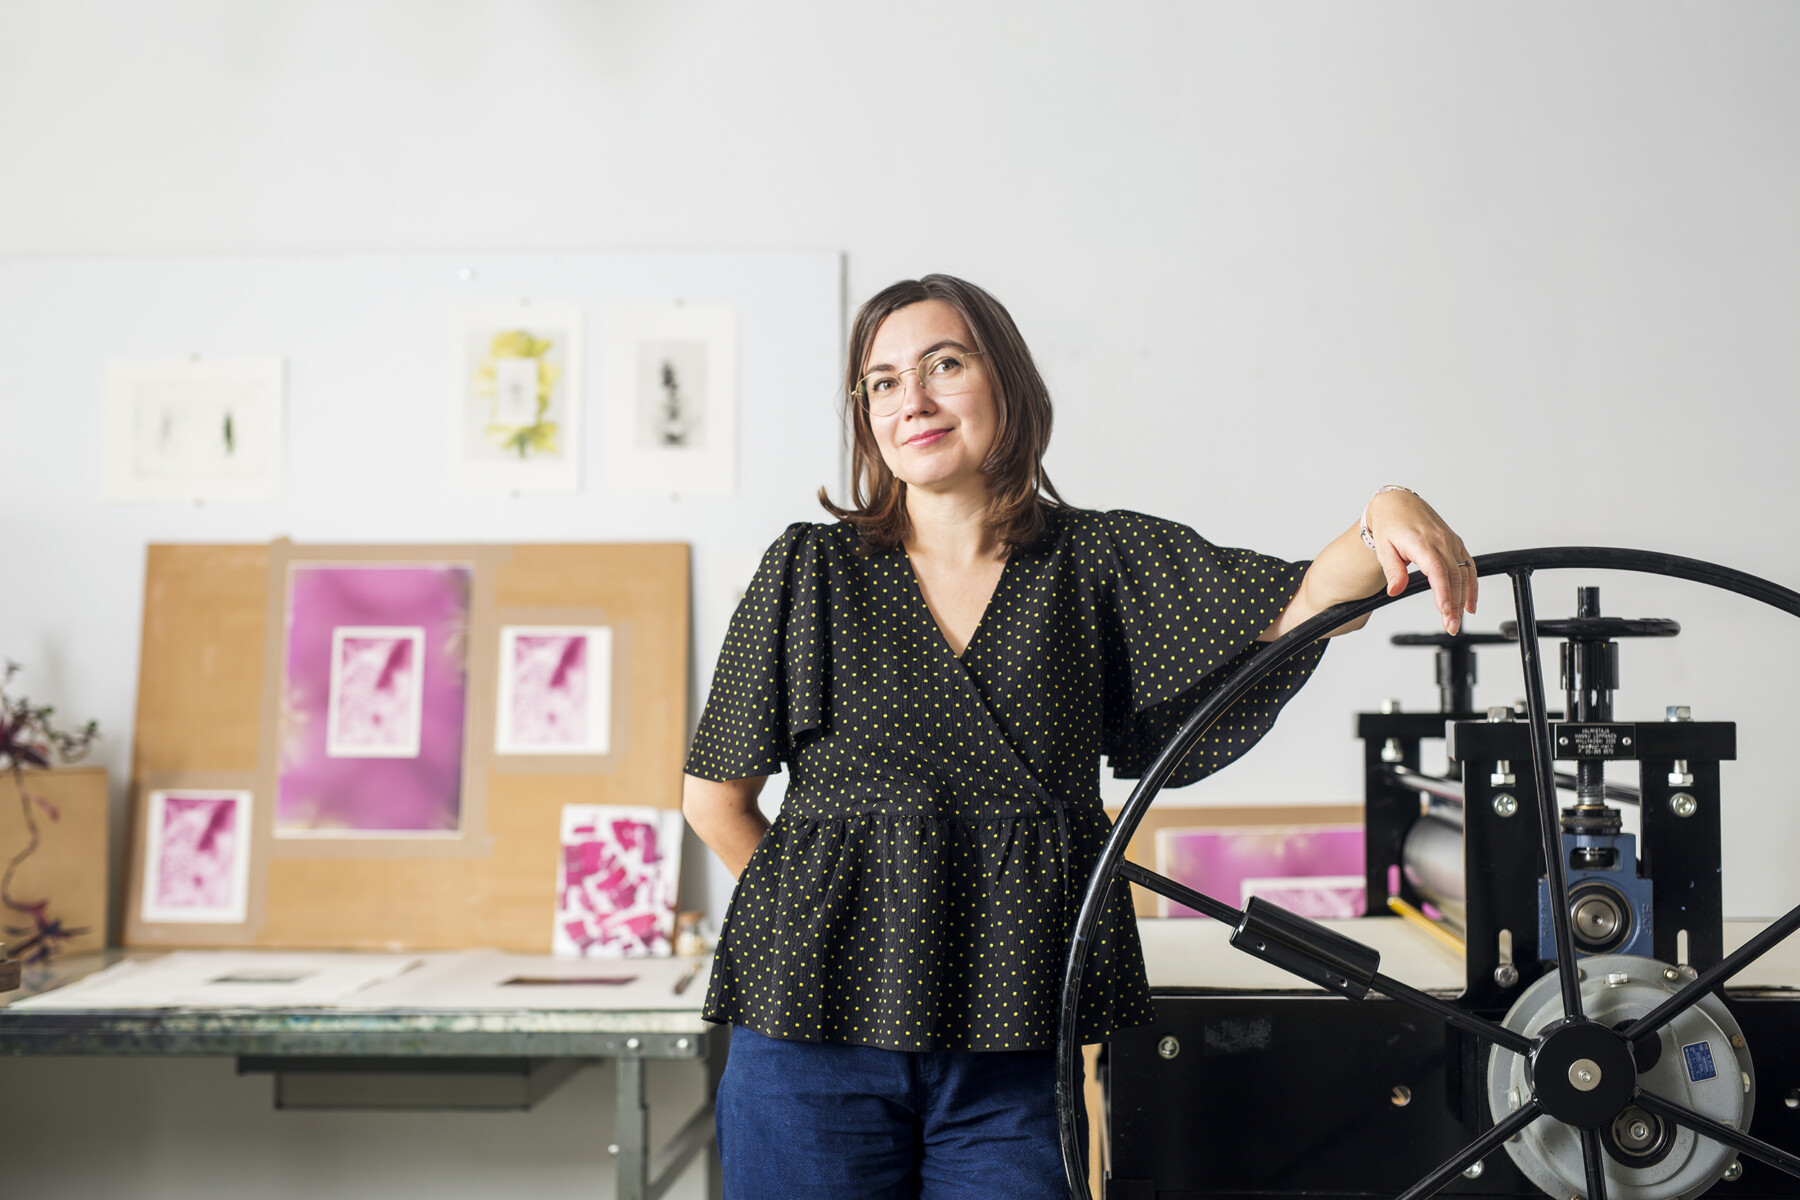 En un estudio de arte con grabados colgados en la pared, una mujer posa con uno de sus brazos apoyado en la manivela de una antigua imprenta.